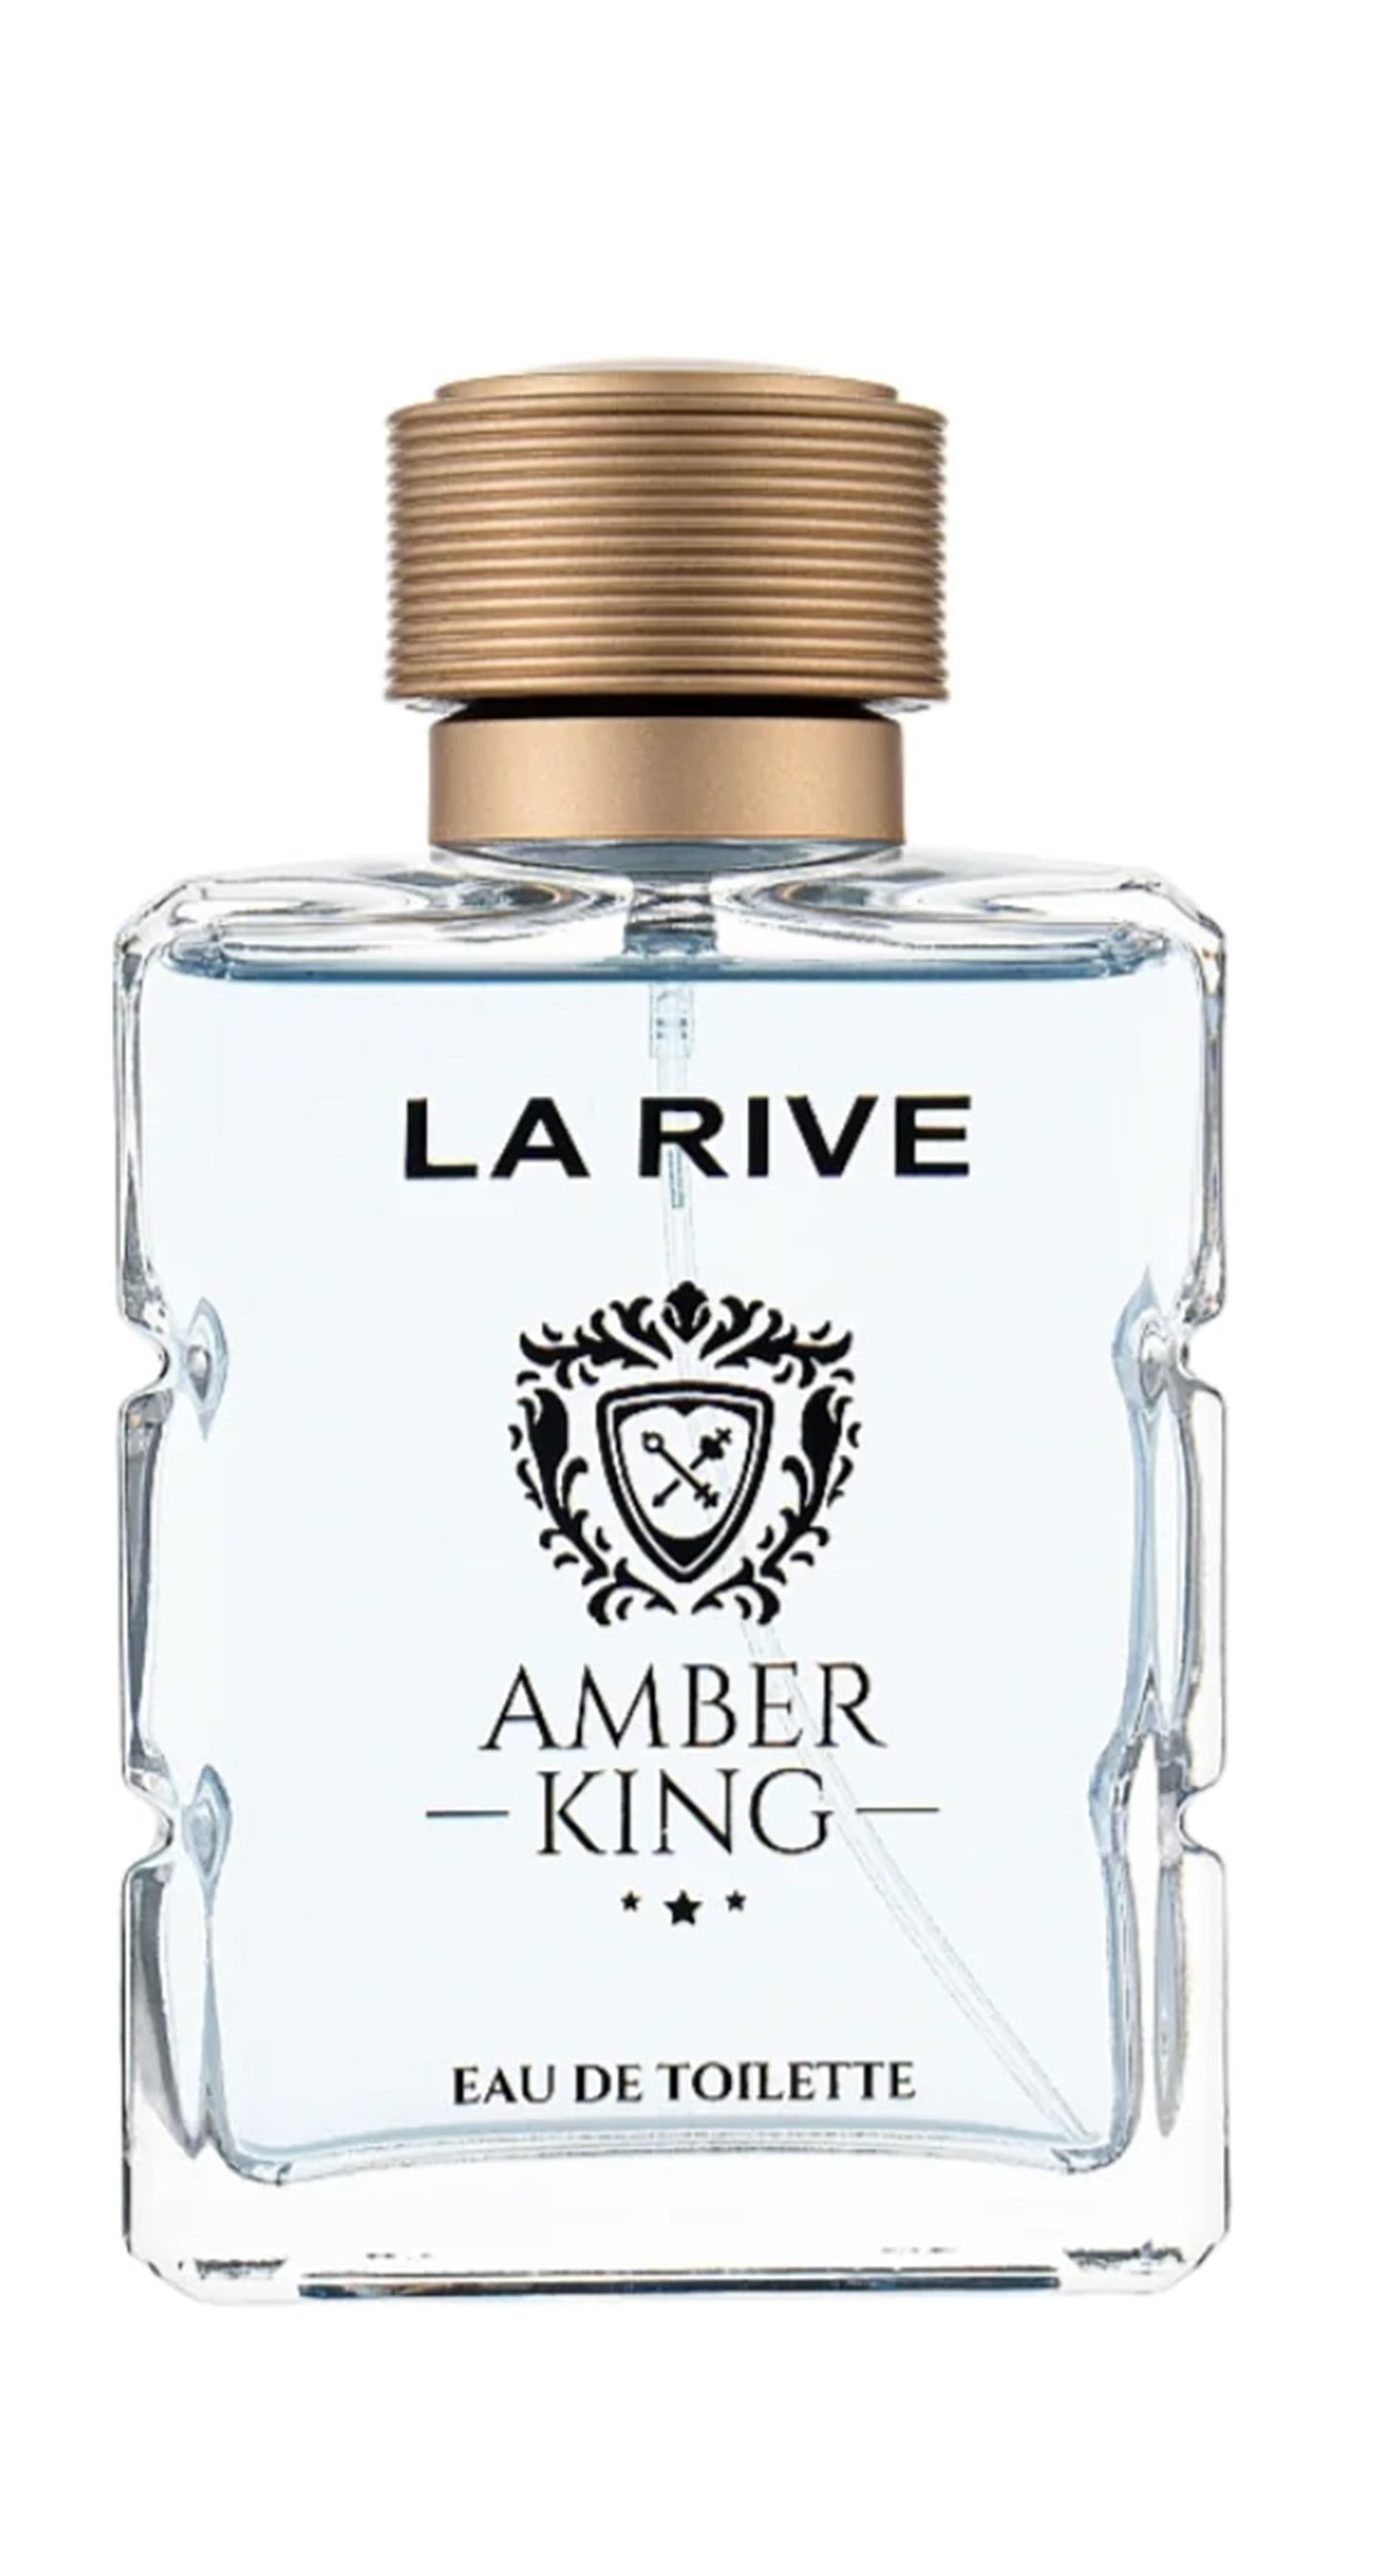 LA RIVE AMBER KING EAU DE TOILETTE 100ML - woody aromatic